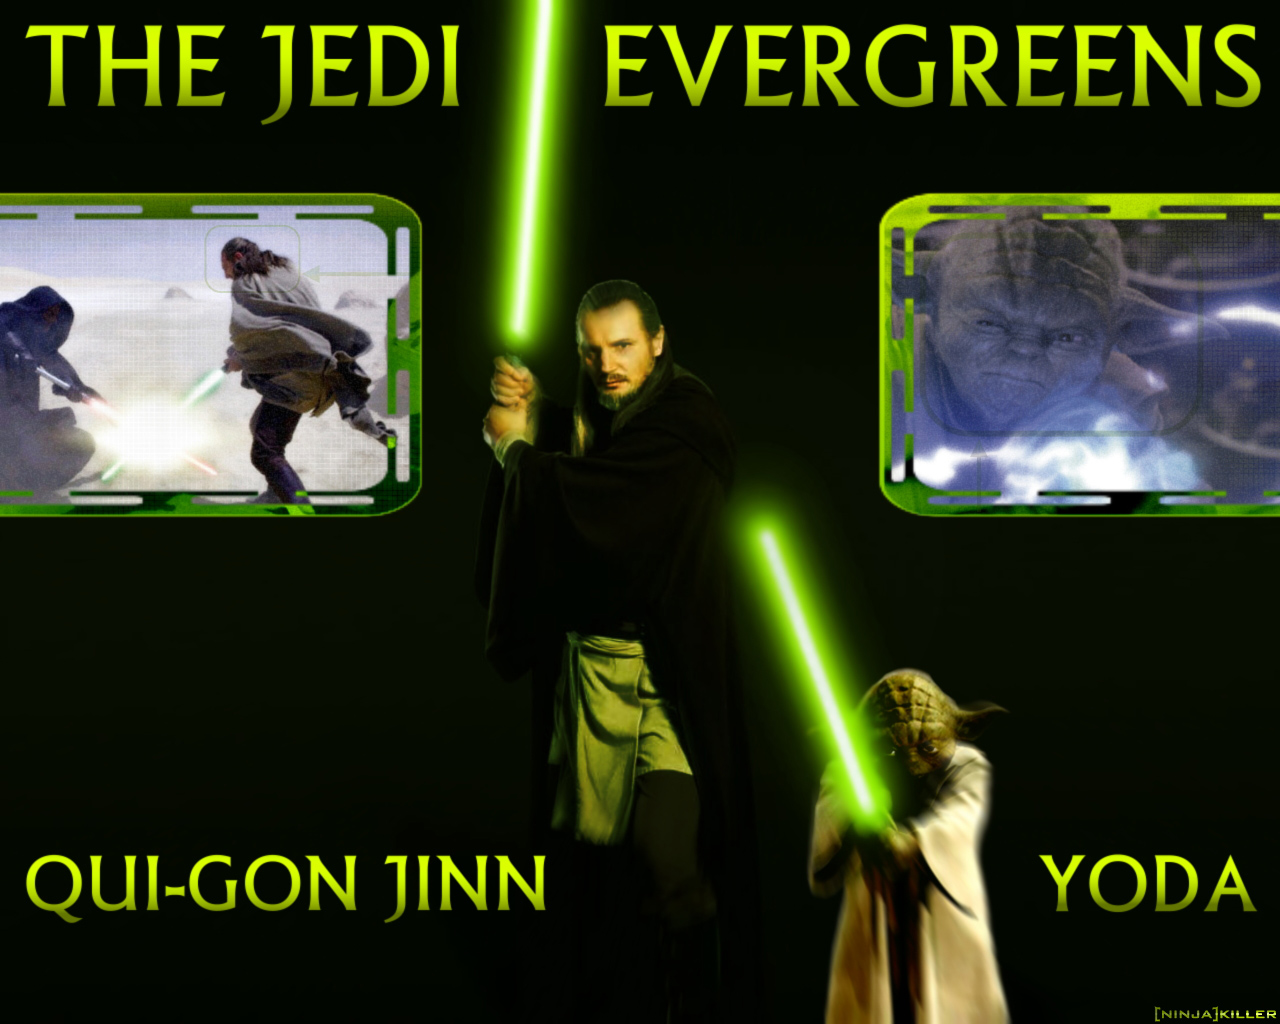 Jedi Evergreens